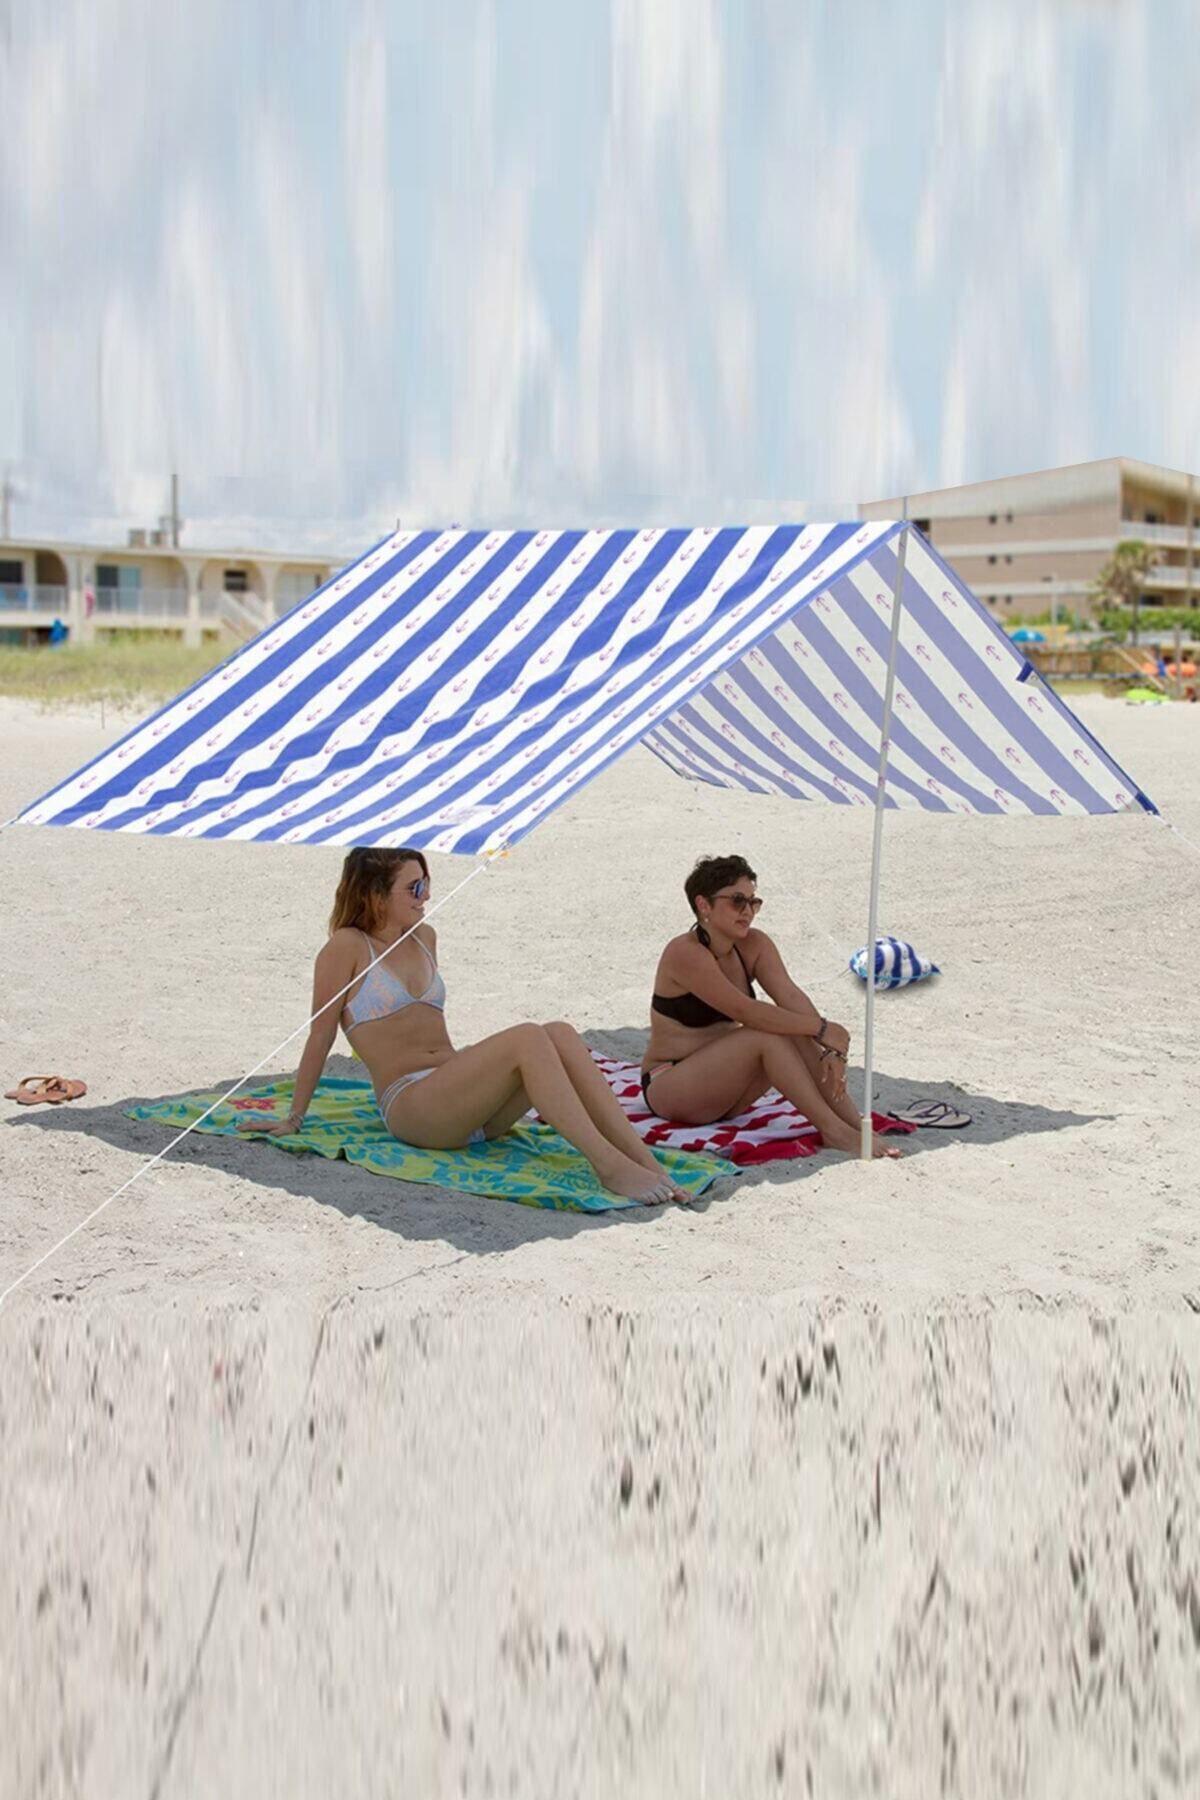 Bundera Lisa Gölgelik Tente Plaj Şemsiyesi Çadır 200 X 250cm Kamp Piknik Güneşlik Şemsiye (MAVİ)